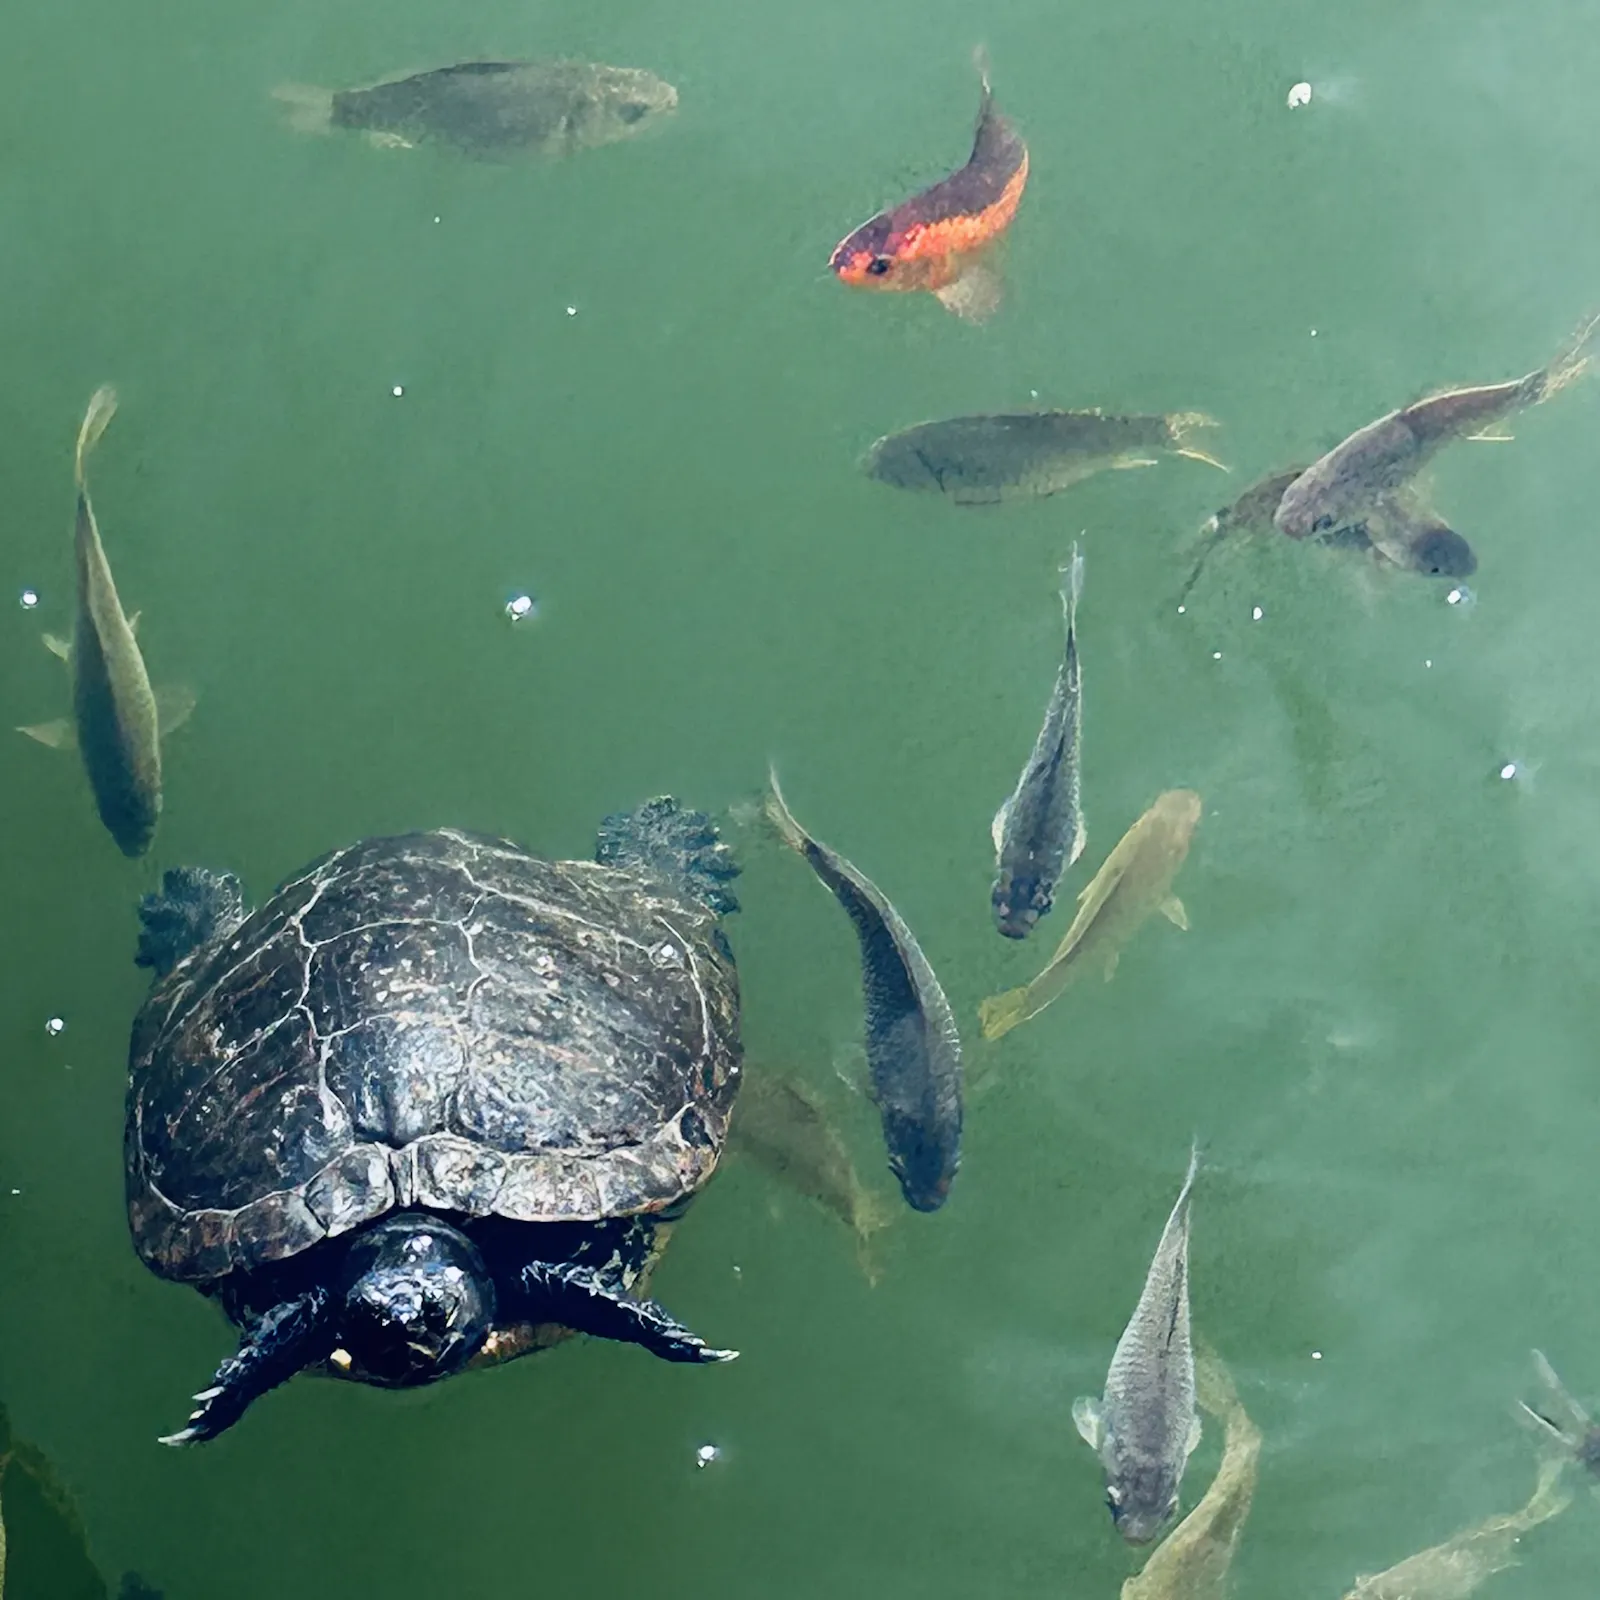 Schildkröte schwimmt in grünem Gewässer inmitten von Fischen auf Betrachtende zu